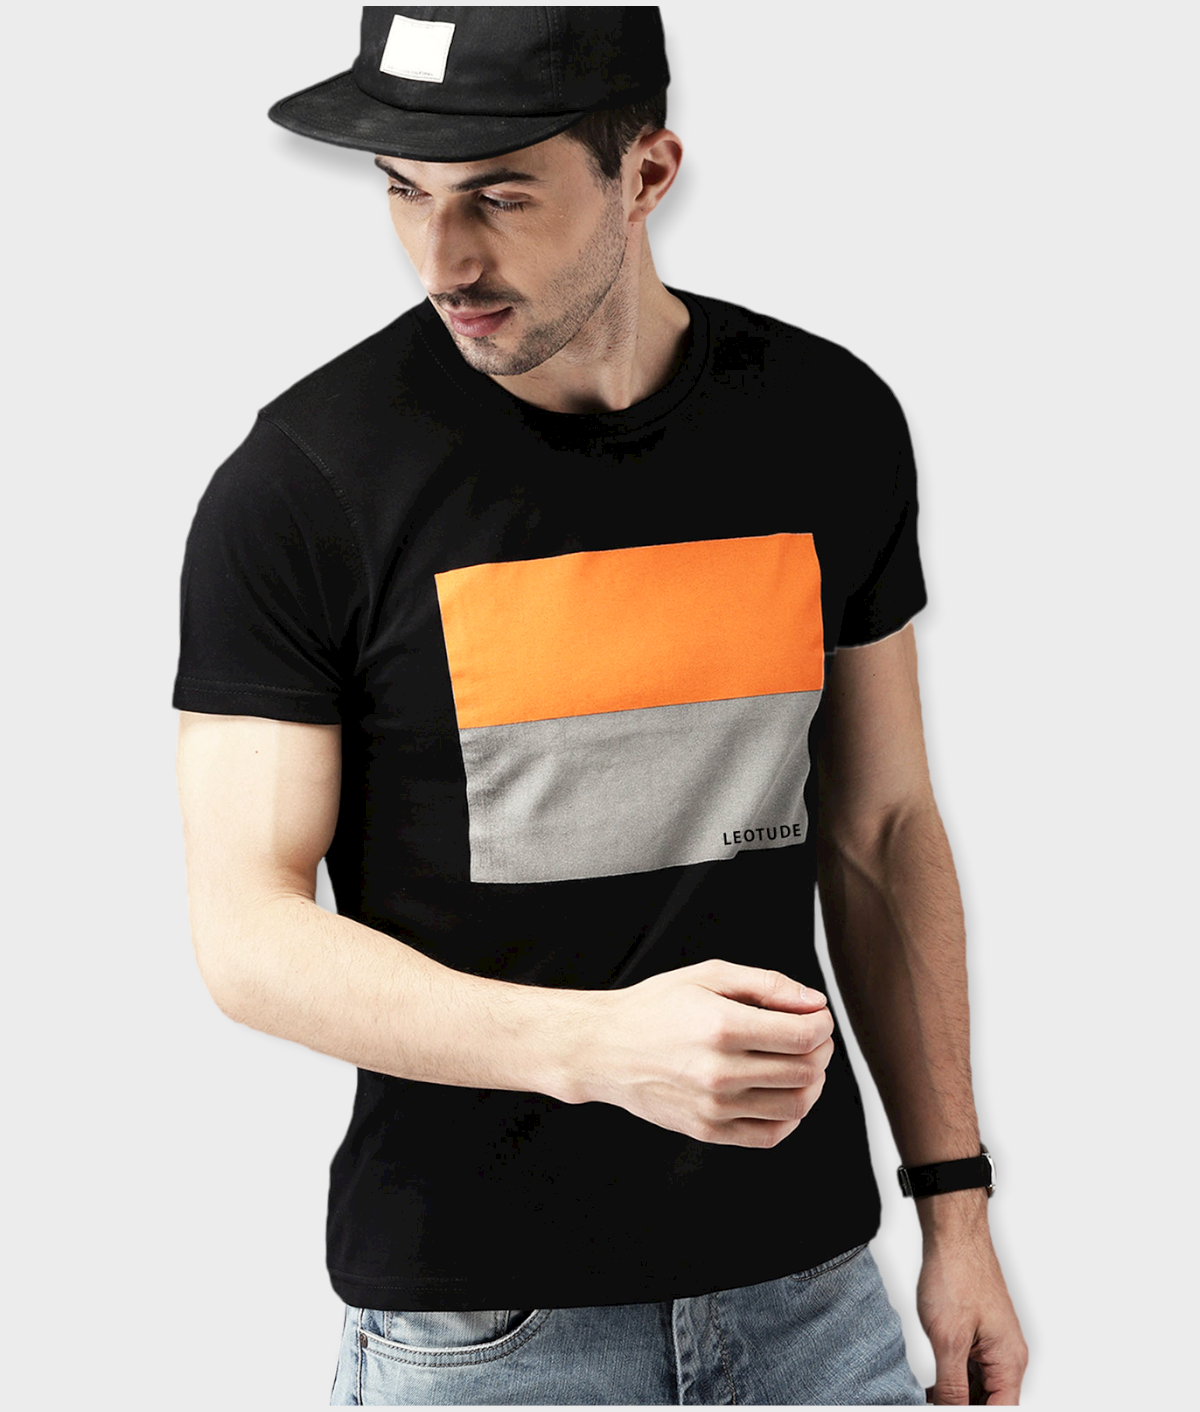     			Leotude - Orange Cotton Blend Regular Fit Men's T-Shirt ( Pack of 1 )